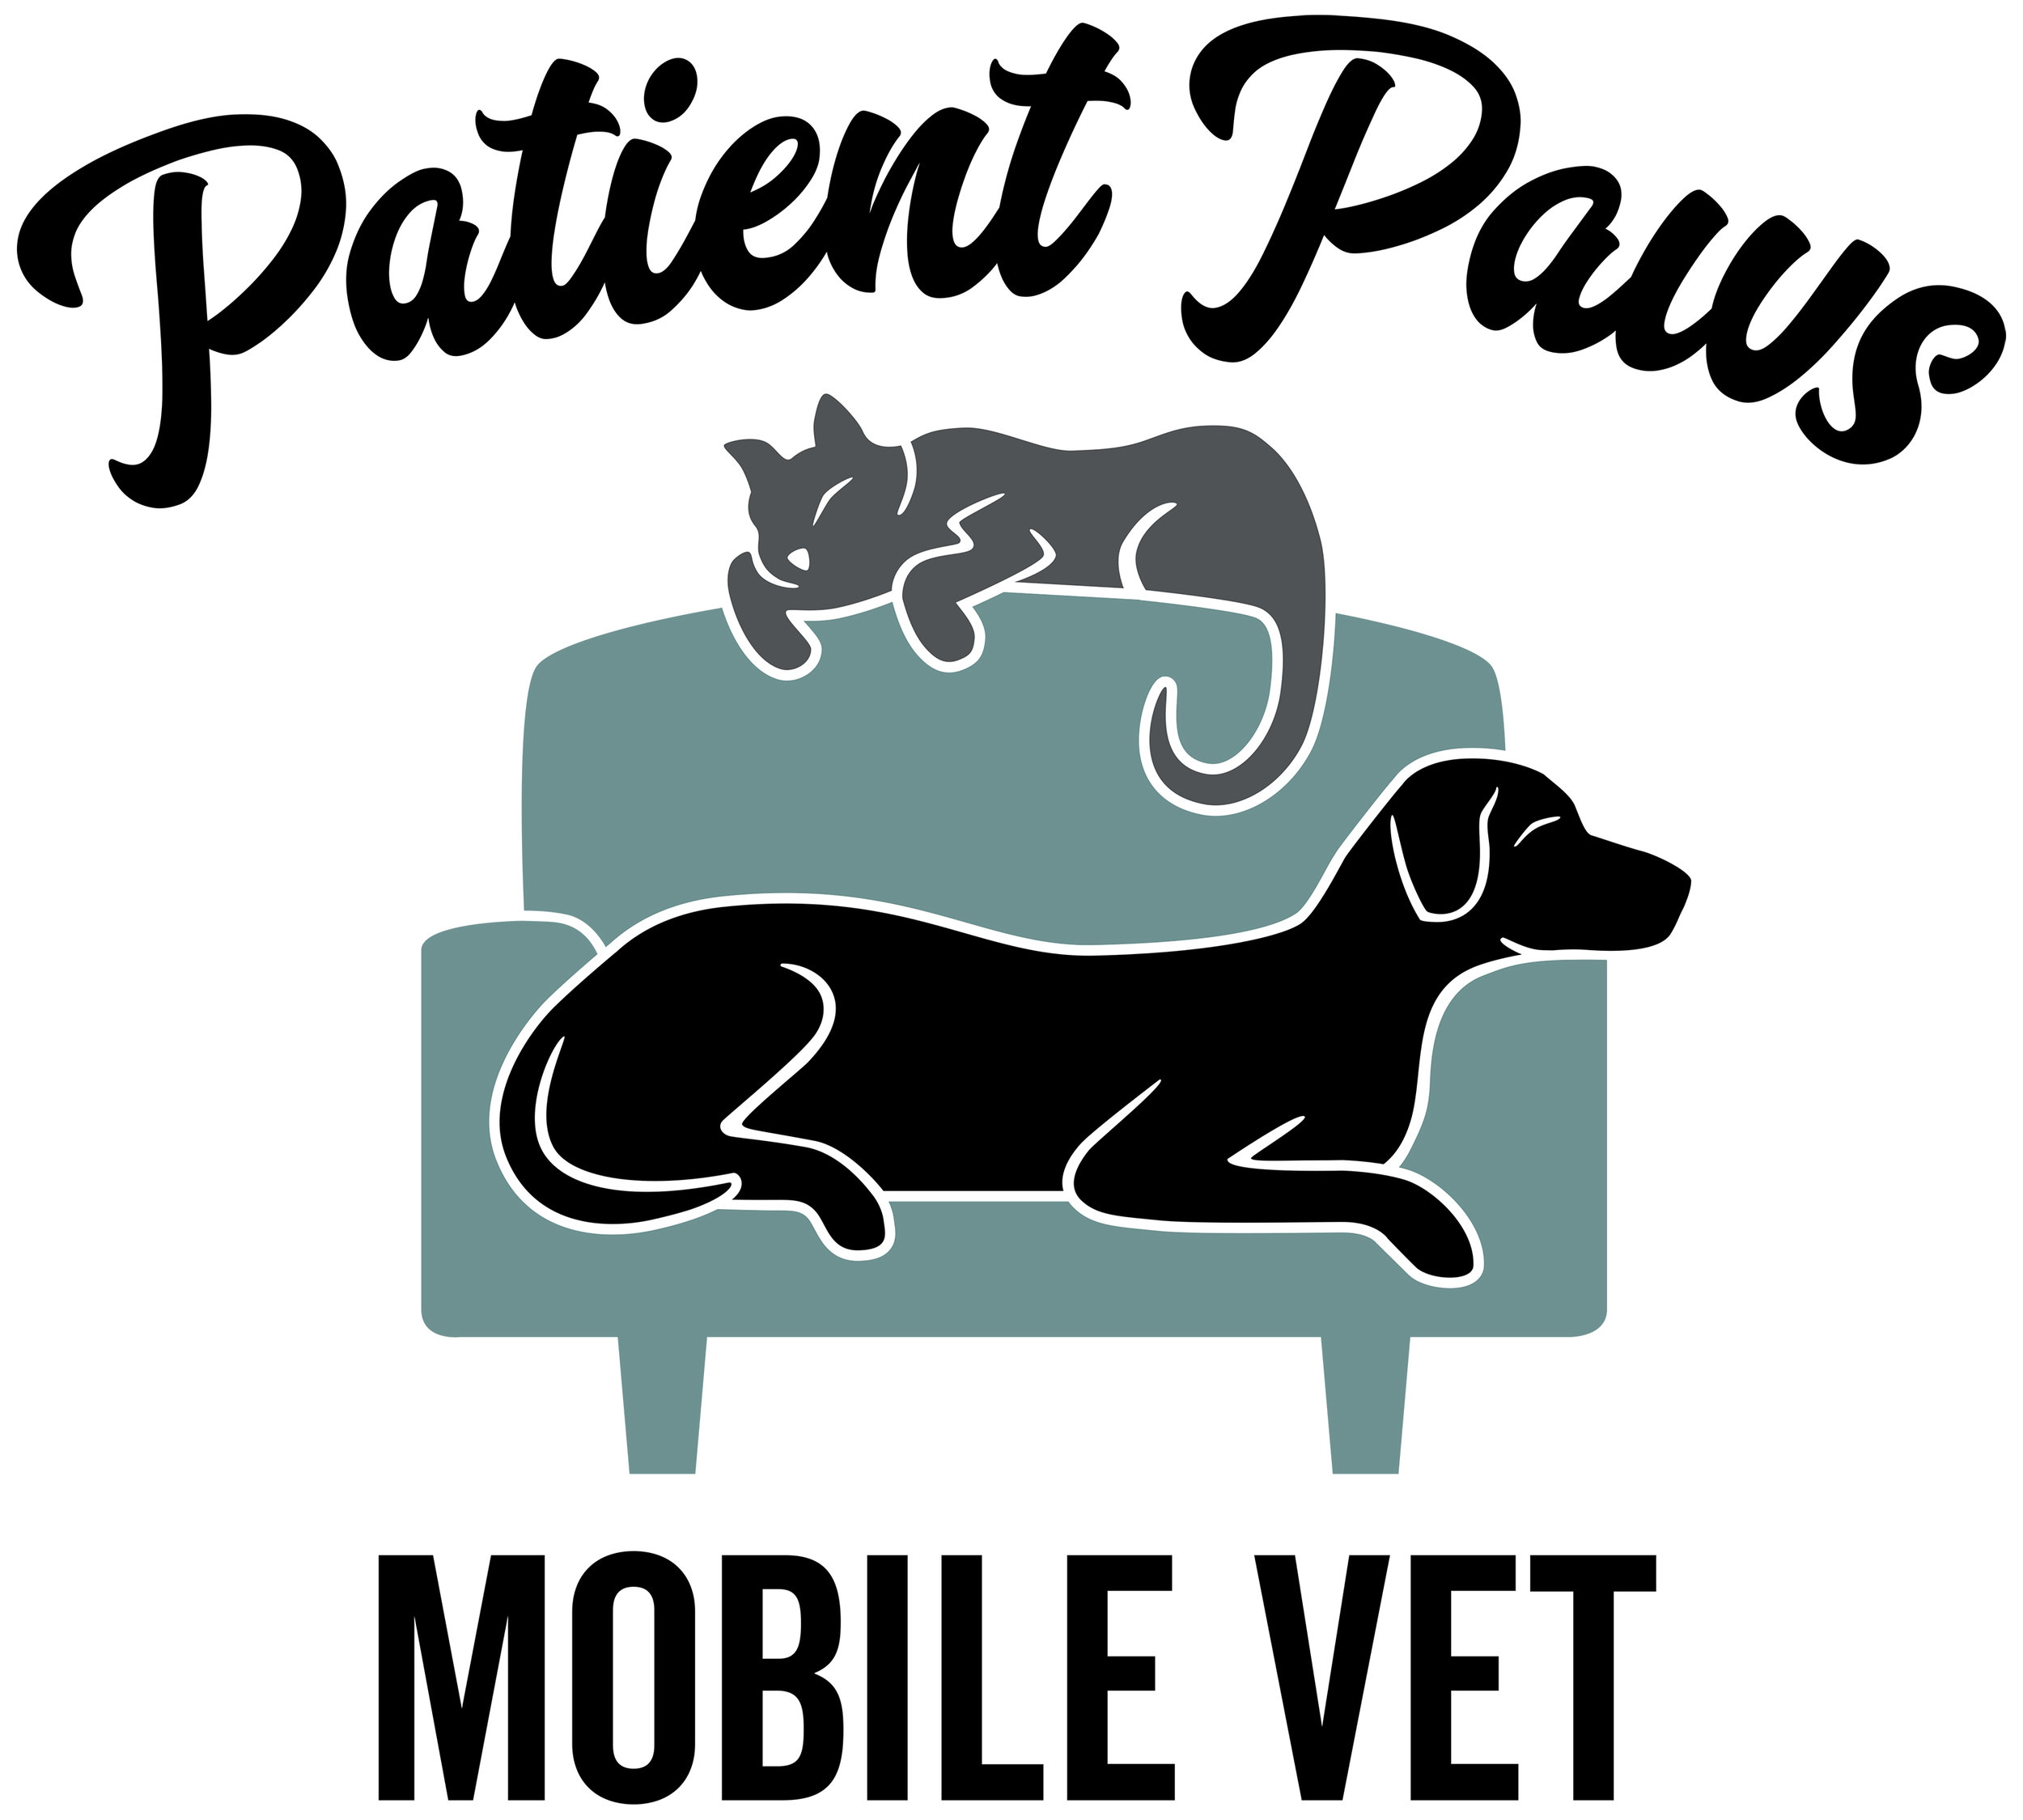 Patient Paws Mobile Vet